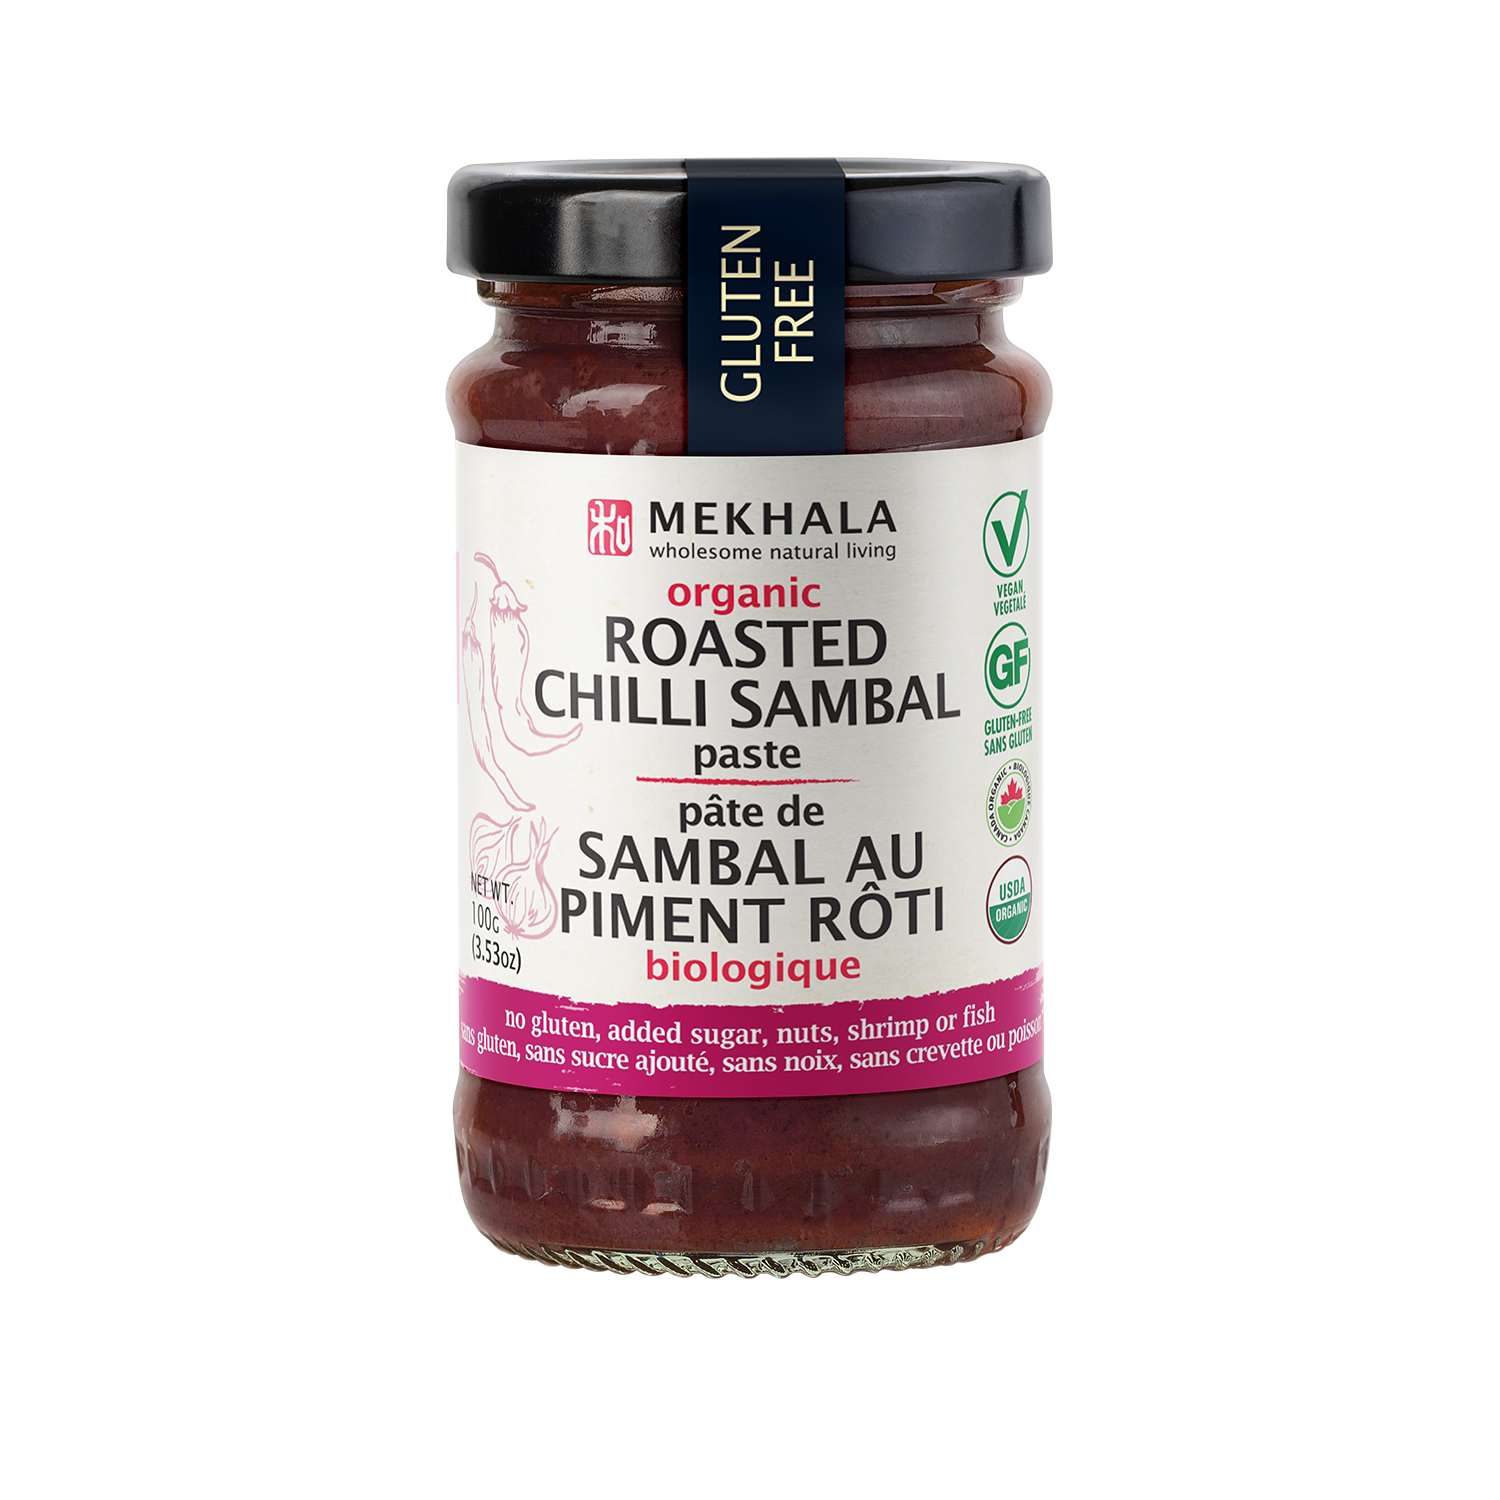 Mekhala - Organic Roasted Chili Sambal Paste - (100g)